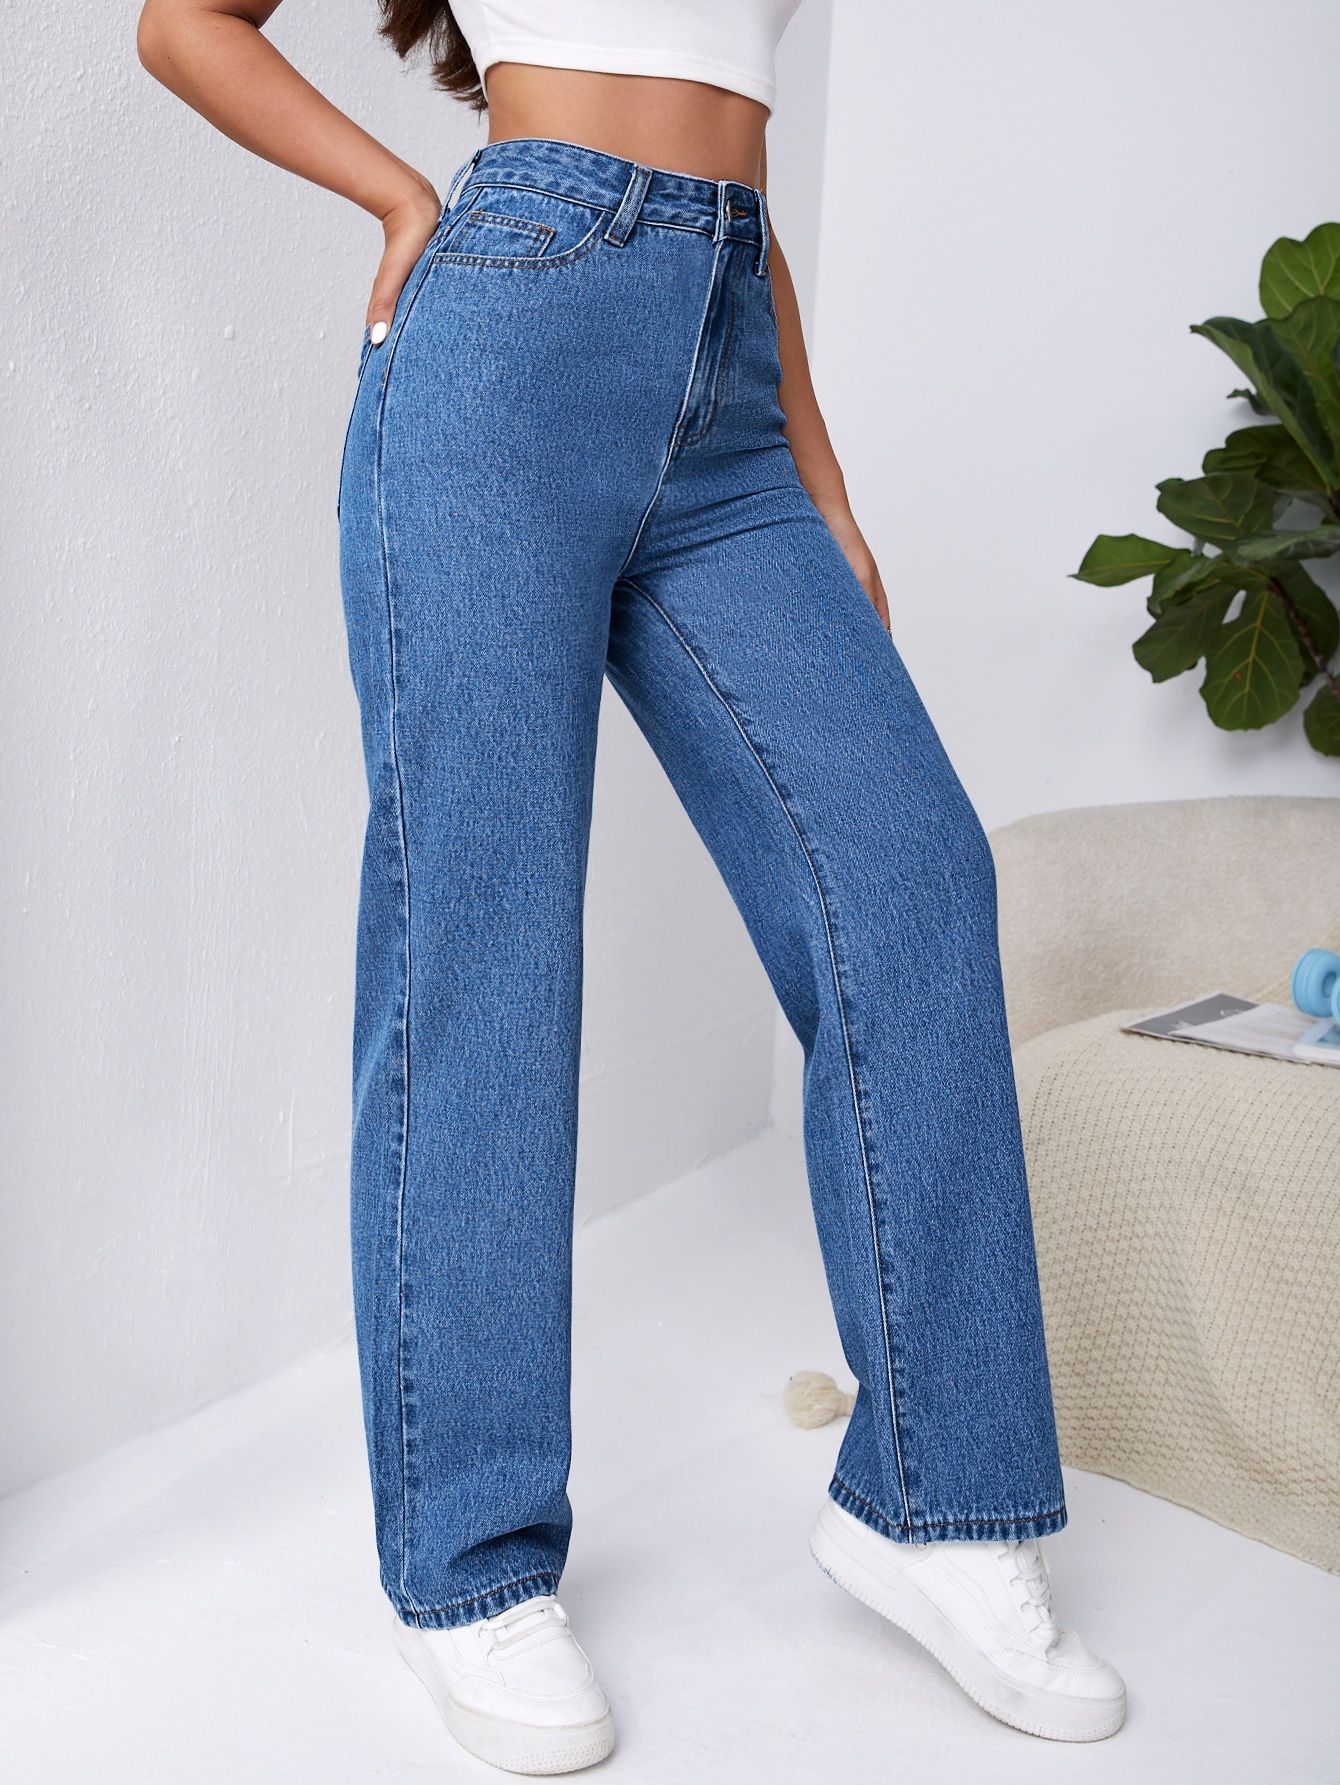 Denim Delight: Explore the Latest Trends in Boyfriend Jeans